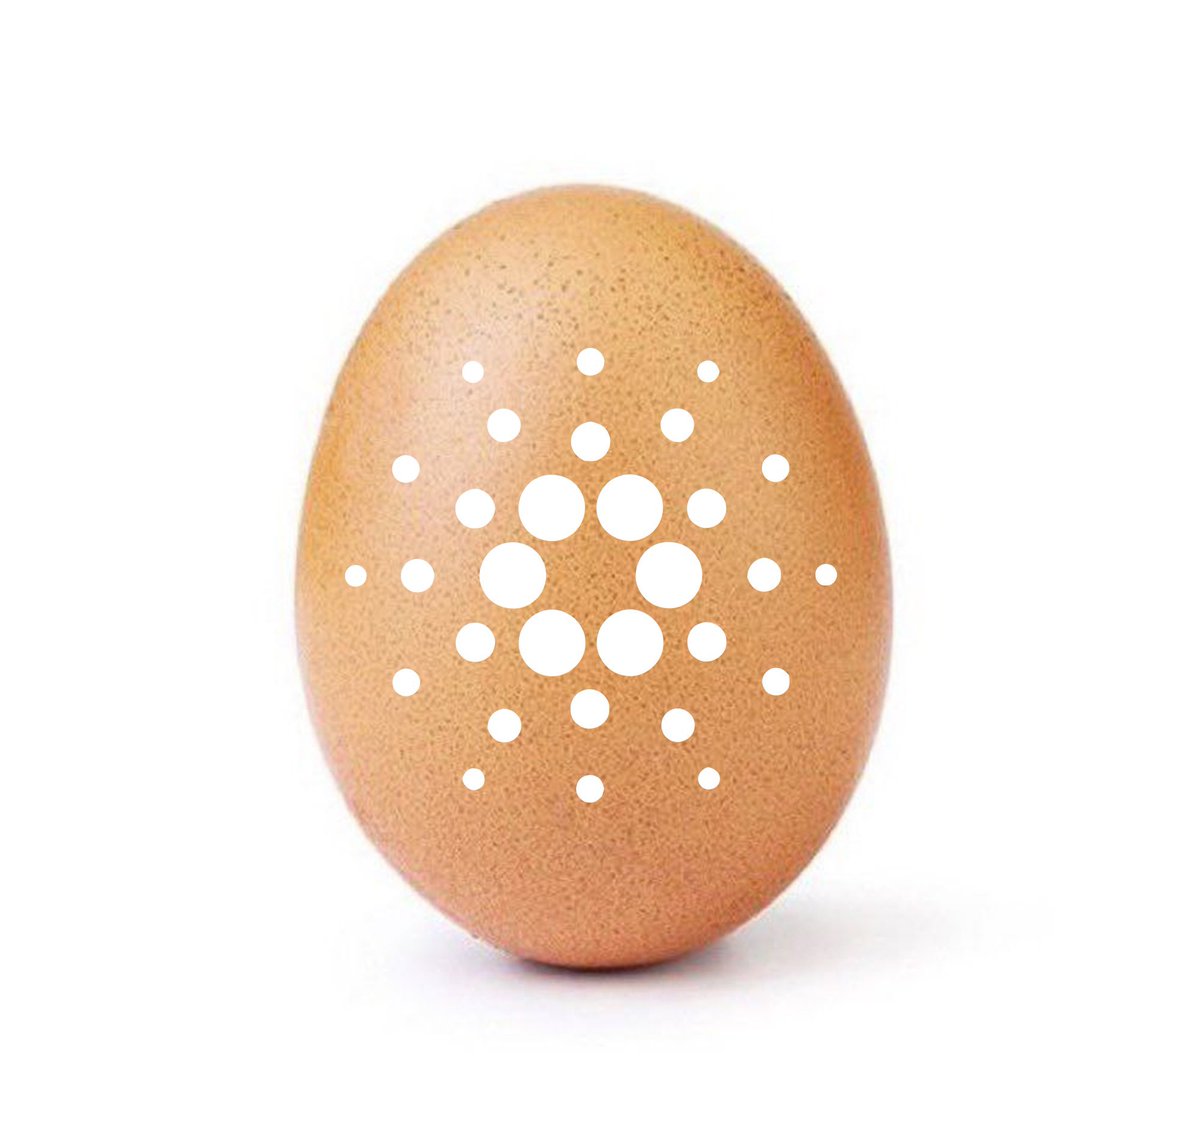 Bg⭕42 On Twitter Rt Richardmccrackn Make This Egg The Most Liked 